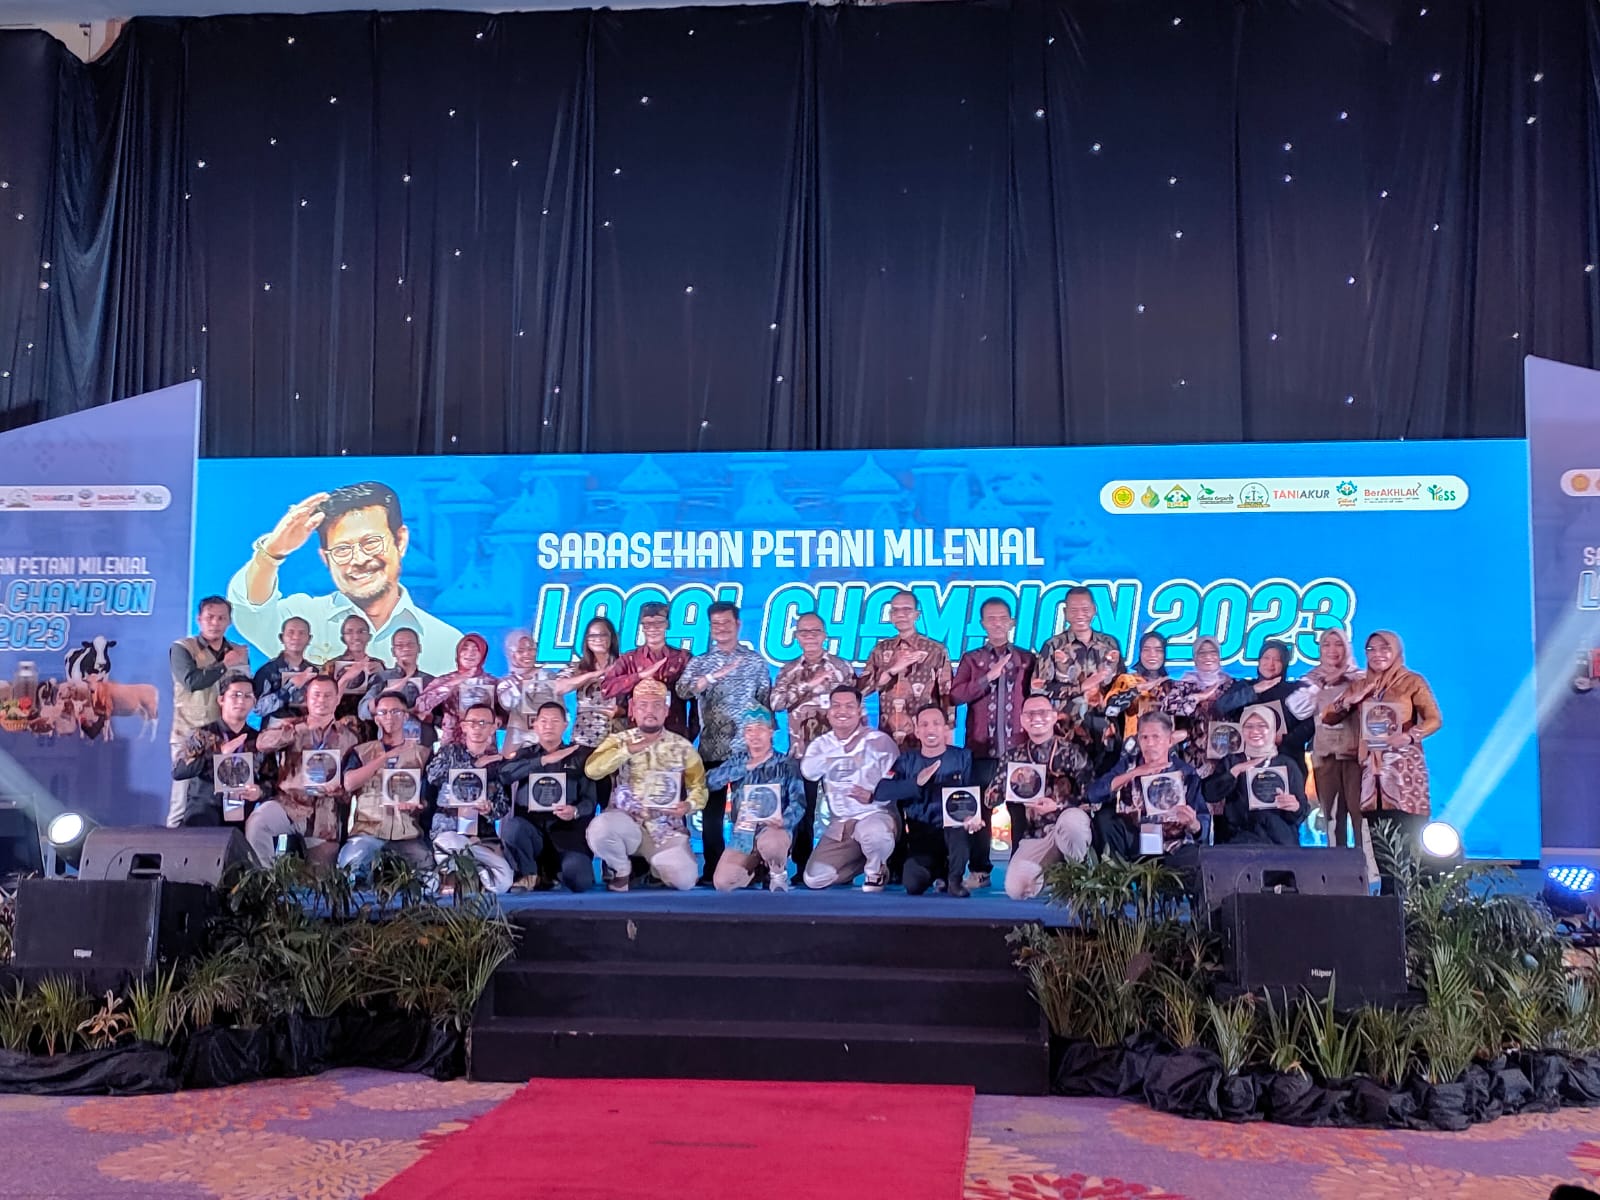 Menghargai Kontribusi Luar Biasa: “Yess Award” Kementerian Pertanian Diberikan kepada Kabupaten Banjar sebagai Kategori DIT (District Implementation Team)